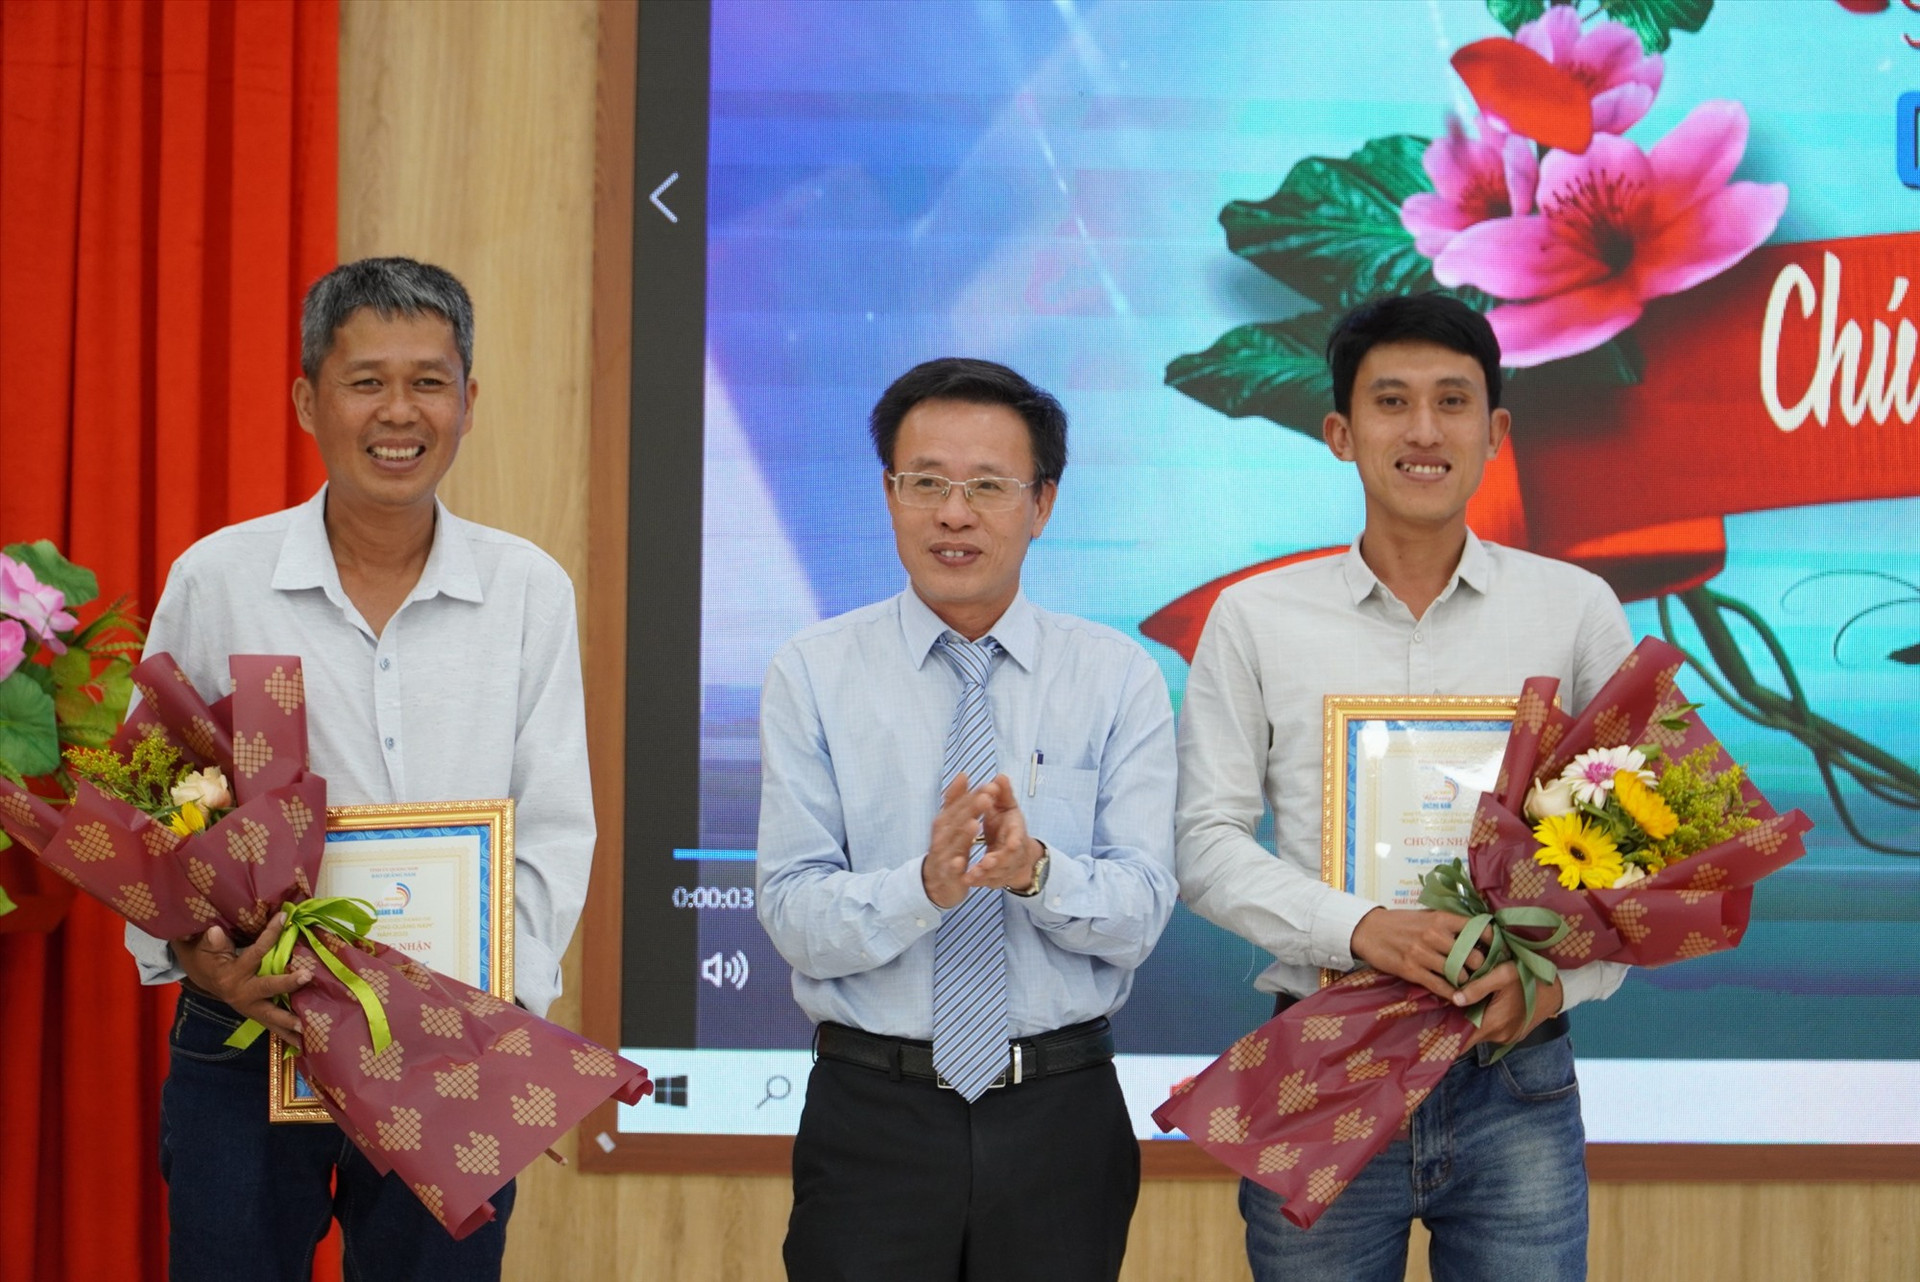 Nhóm tác giả đạt giải nhất với tác phẩm “Vun giấc mơ với vườn rừng” đăng tải trên báo điện tử Quảng Nam. Ảnh: H.Q